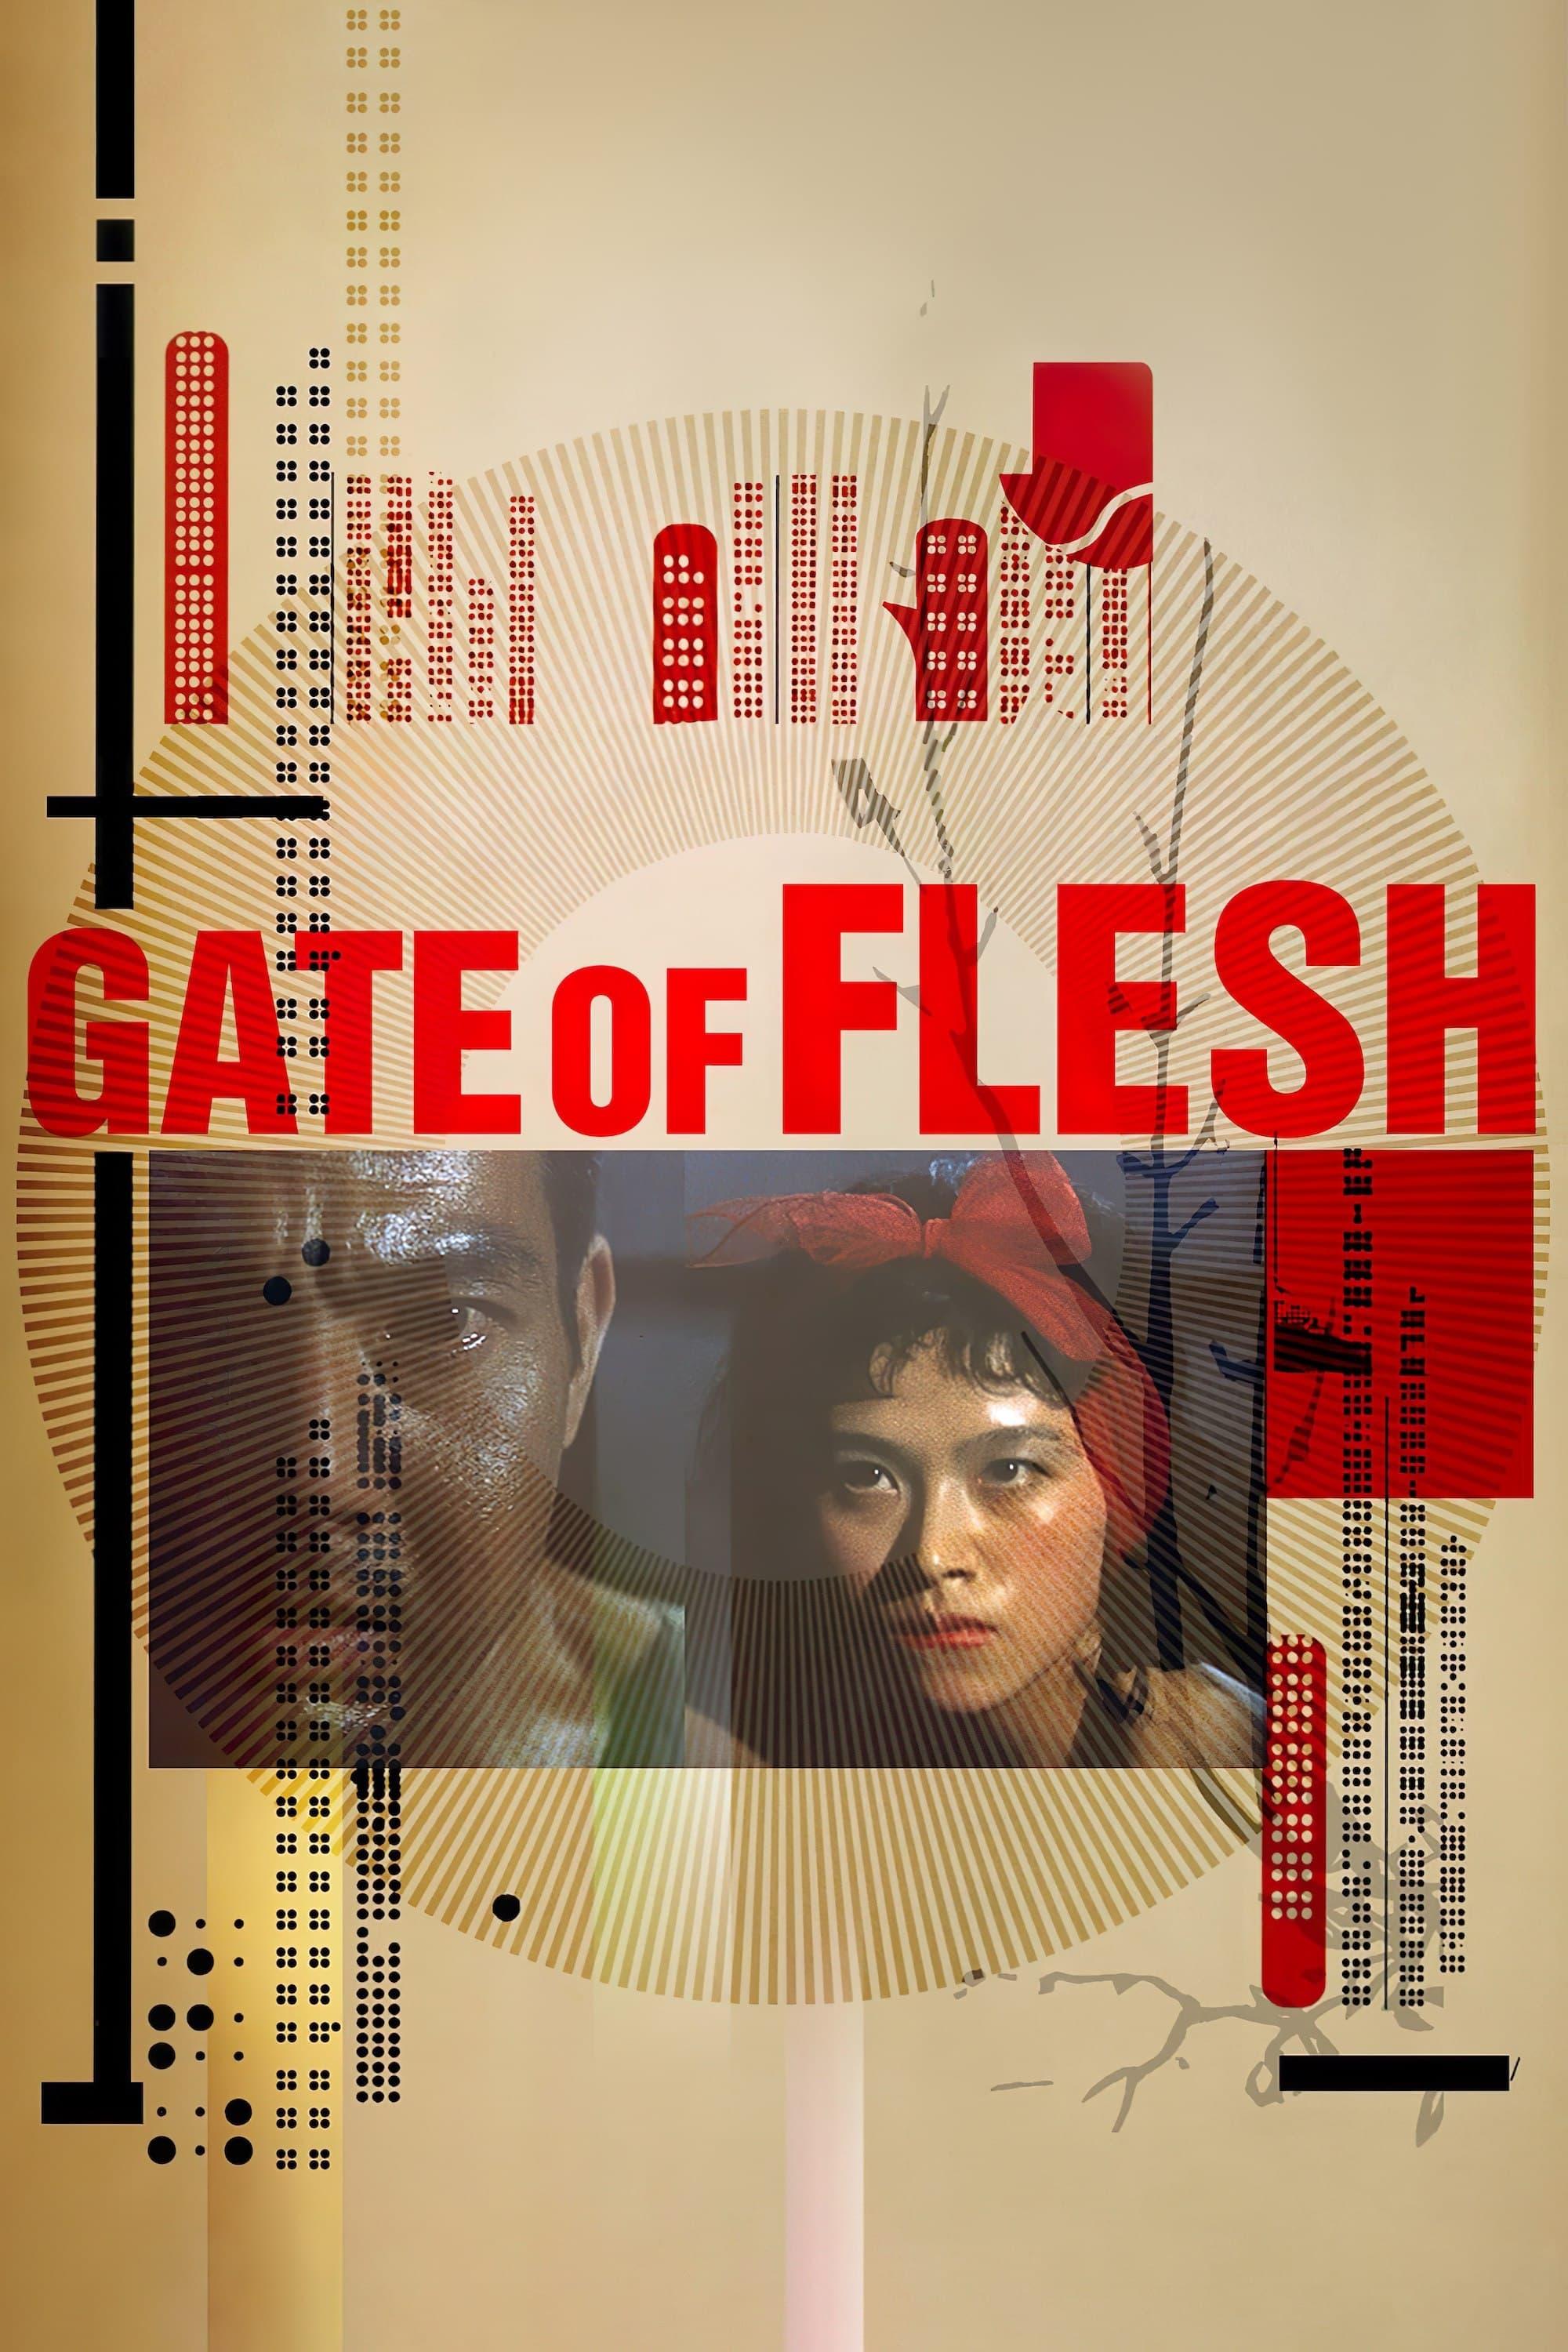 Gate of Flesh poster